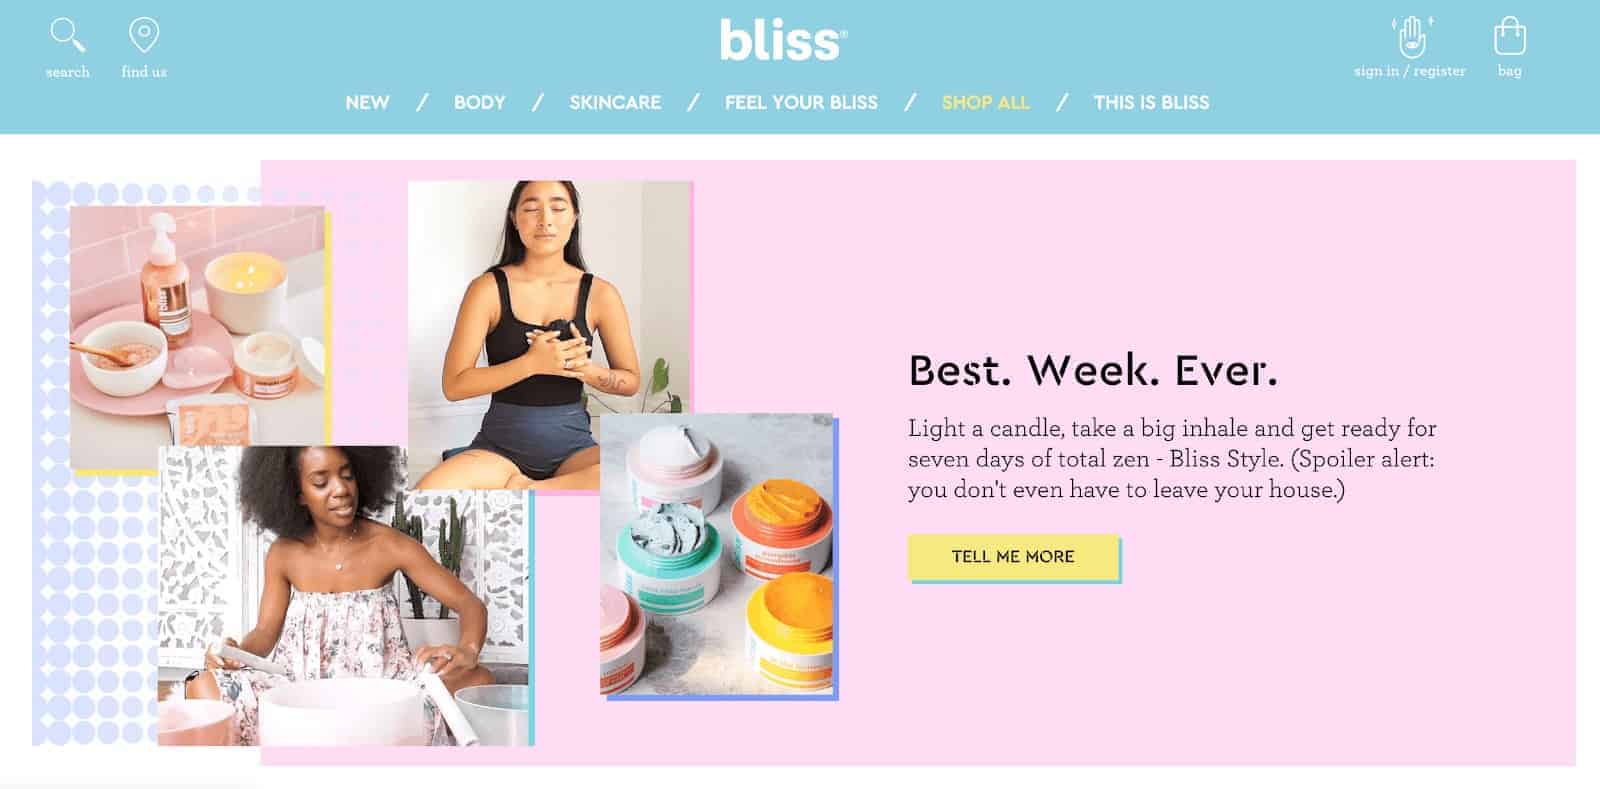 bliss website design